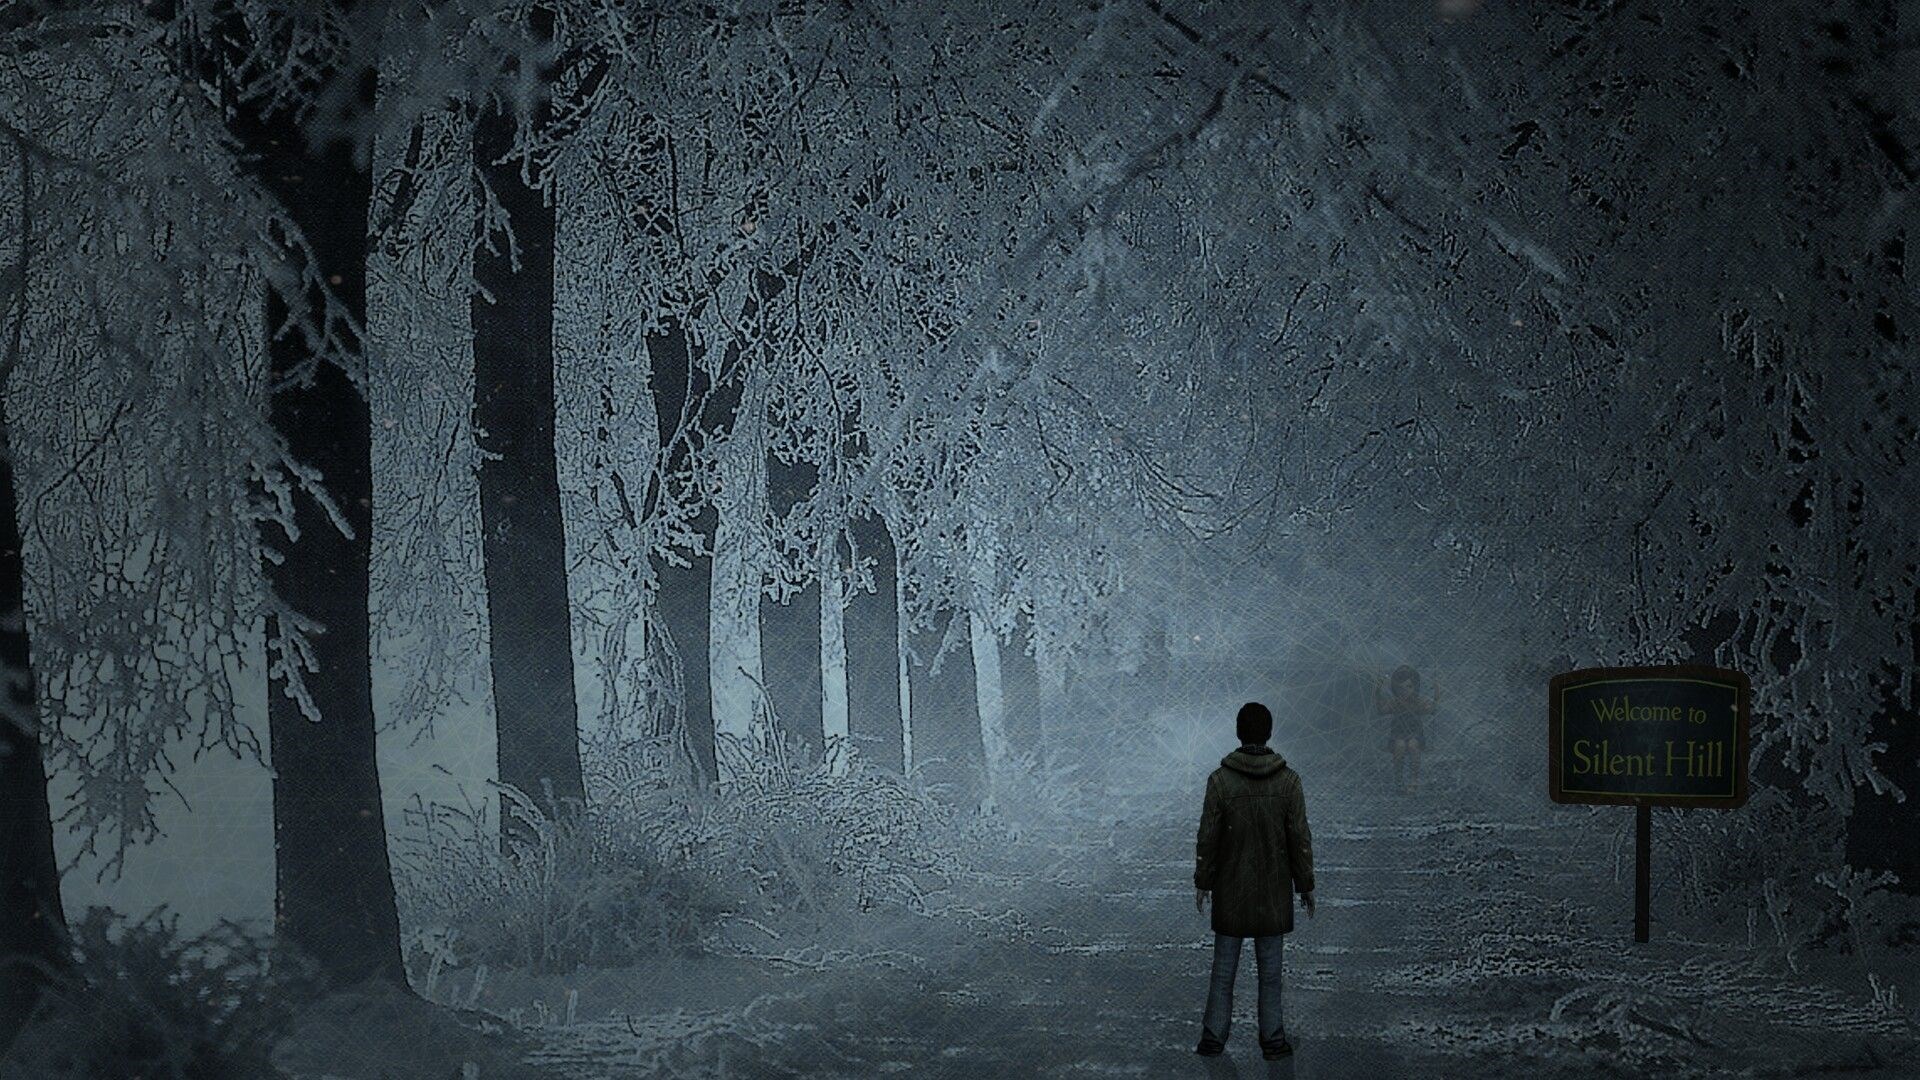 Silent Hill söylentileri büyüyor: 'Bu yaz duyurulacak'